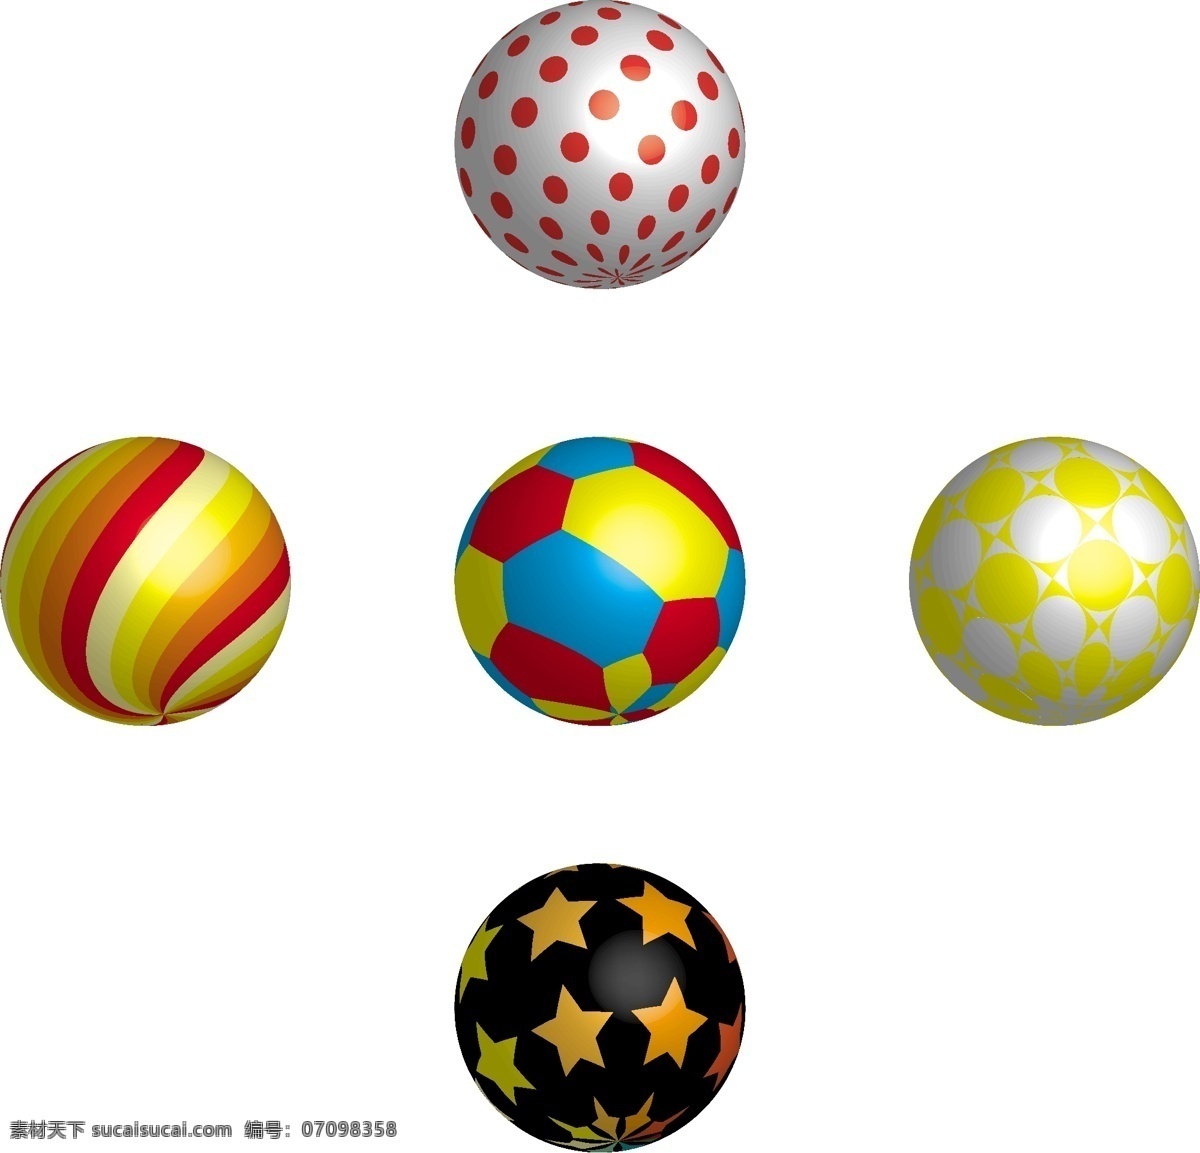 球 球形 棒棒糖设计 棒棒糖 足球 排球 球矢量 儿童球 卡通球 vi设计